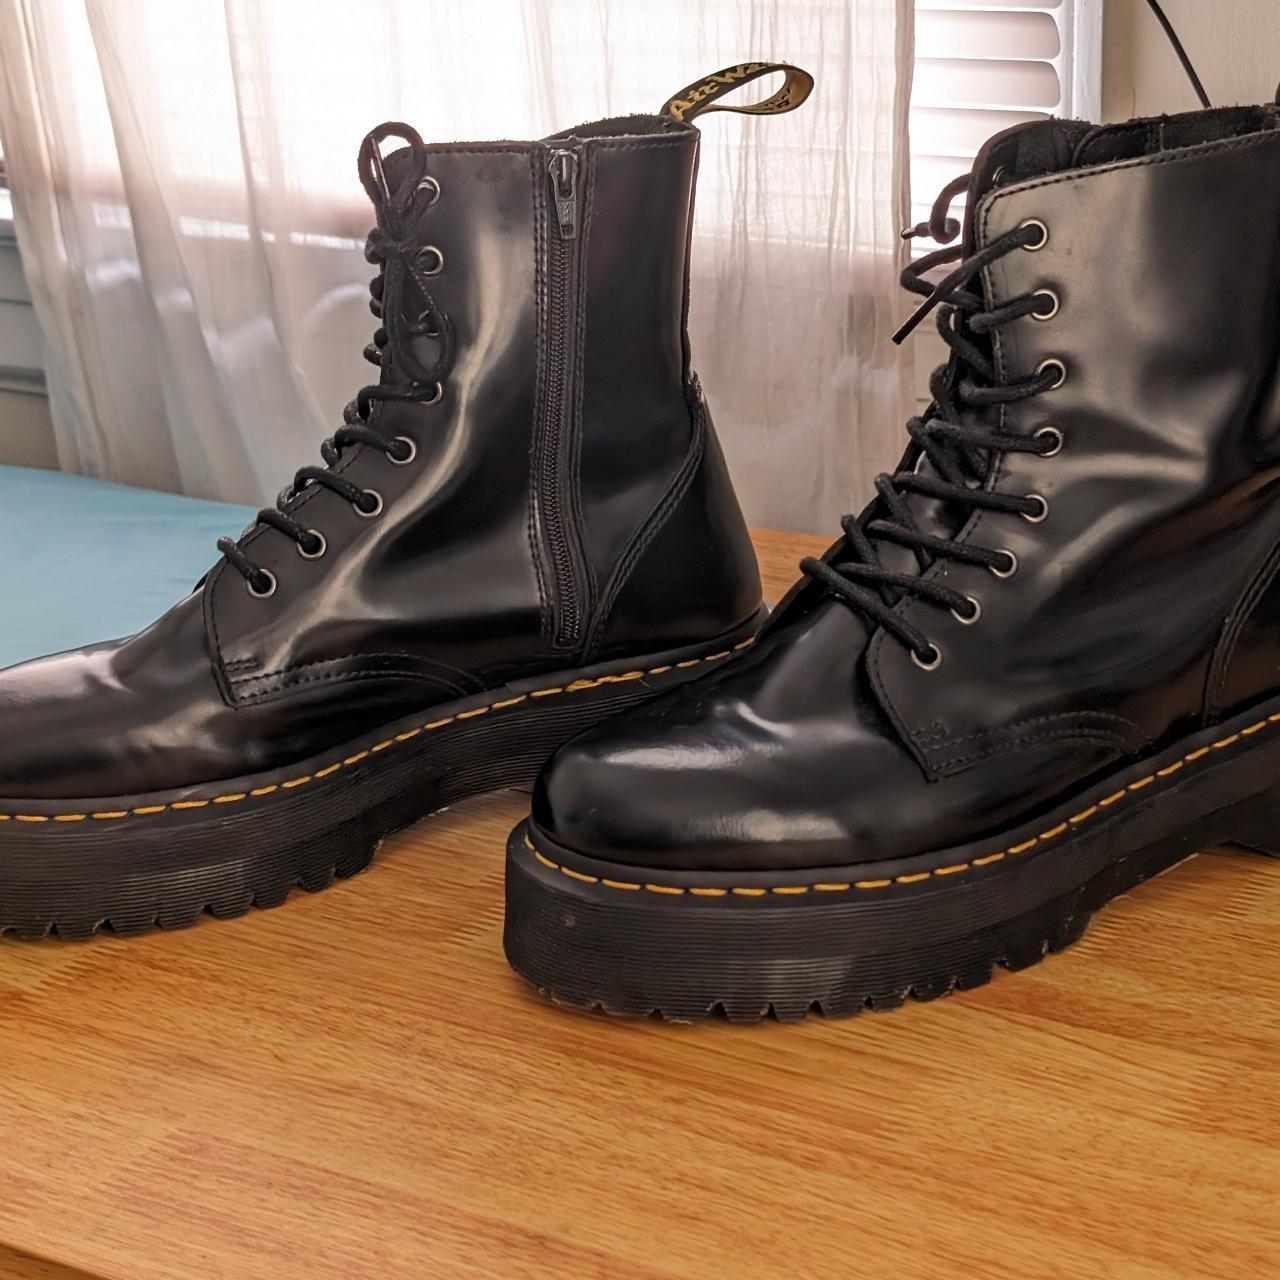 Doc Dr Martens Jadon Platform Leather Boots - Black... - Depop